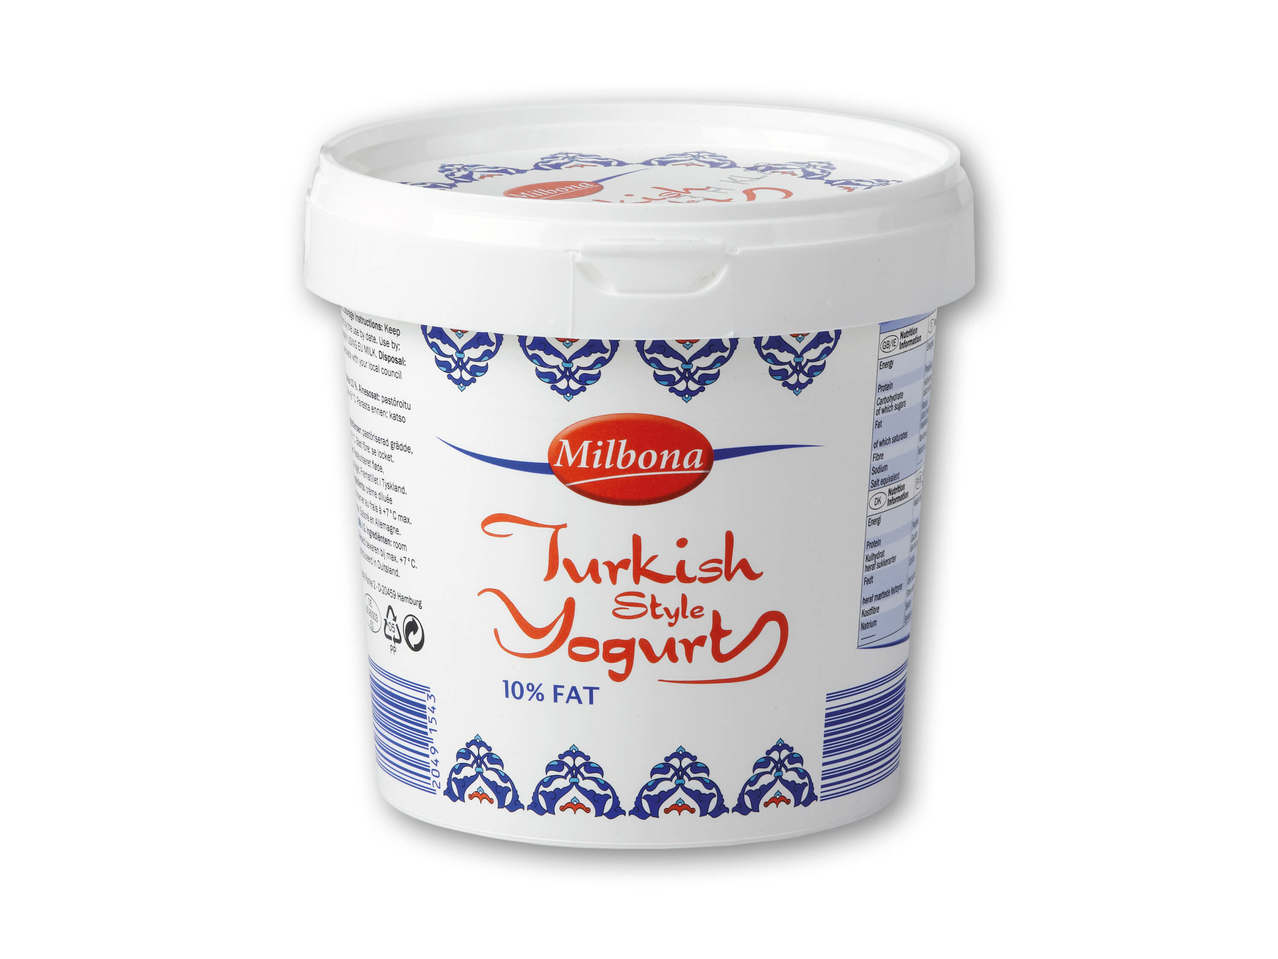 MILBONA Tyrkiskinspireret yoghurt